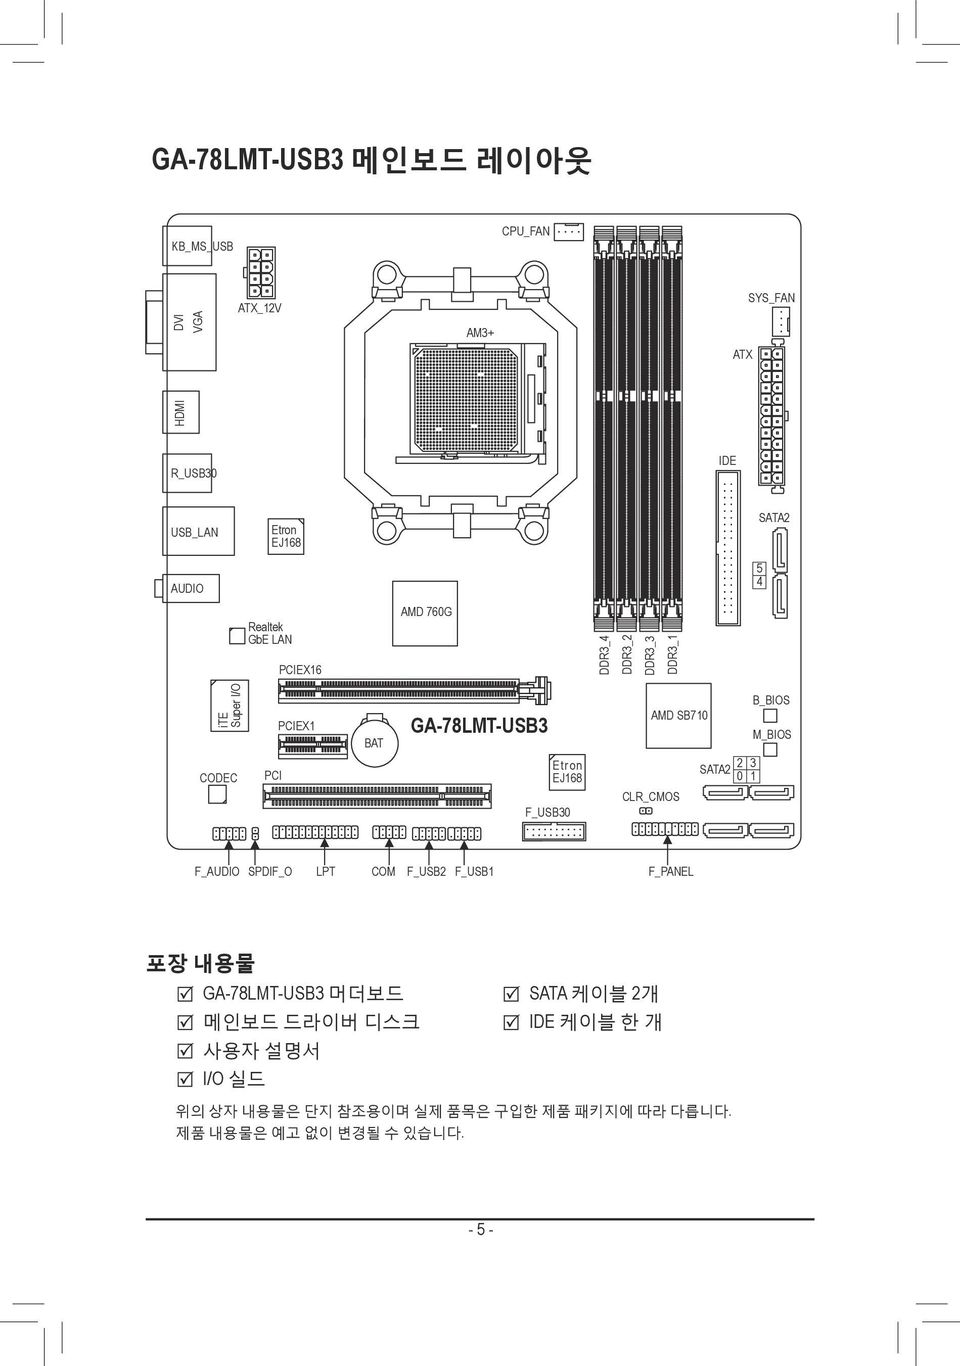 F_USB30 AMD SB710 CLR_CMOS SATA2 2 3 0 1 B_BIOS M_BIOS F_AUDIO SPDIF_O LPT COM F_USB2 F_USB1 F_PANEL 포장 내용물 GA-78LMT-USB3 머더보드